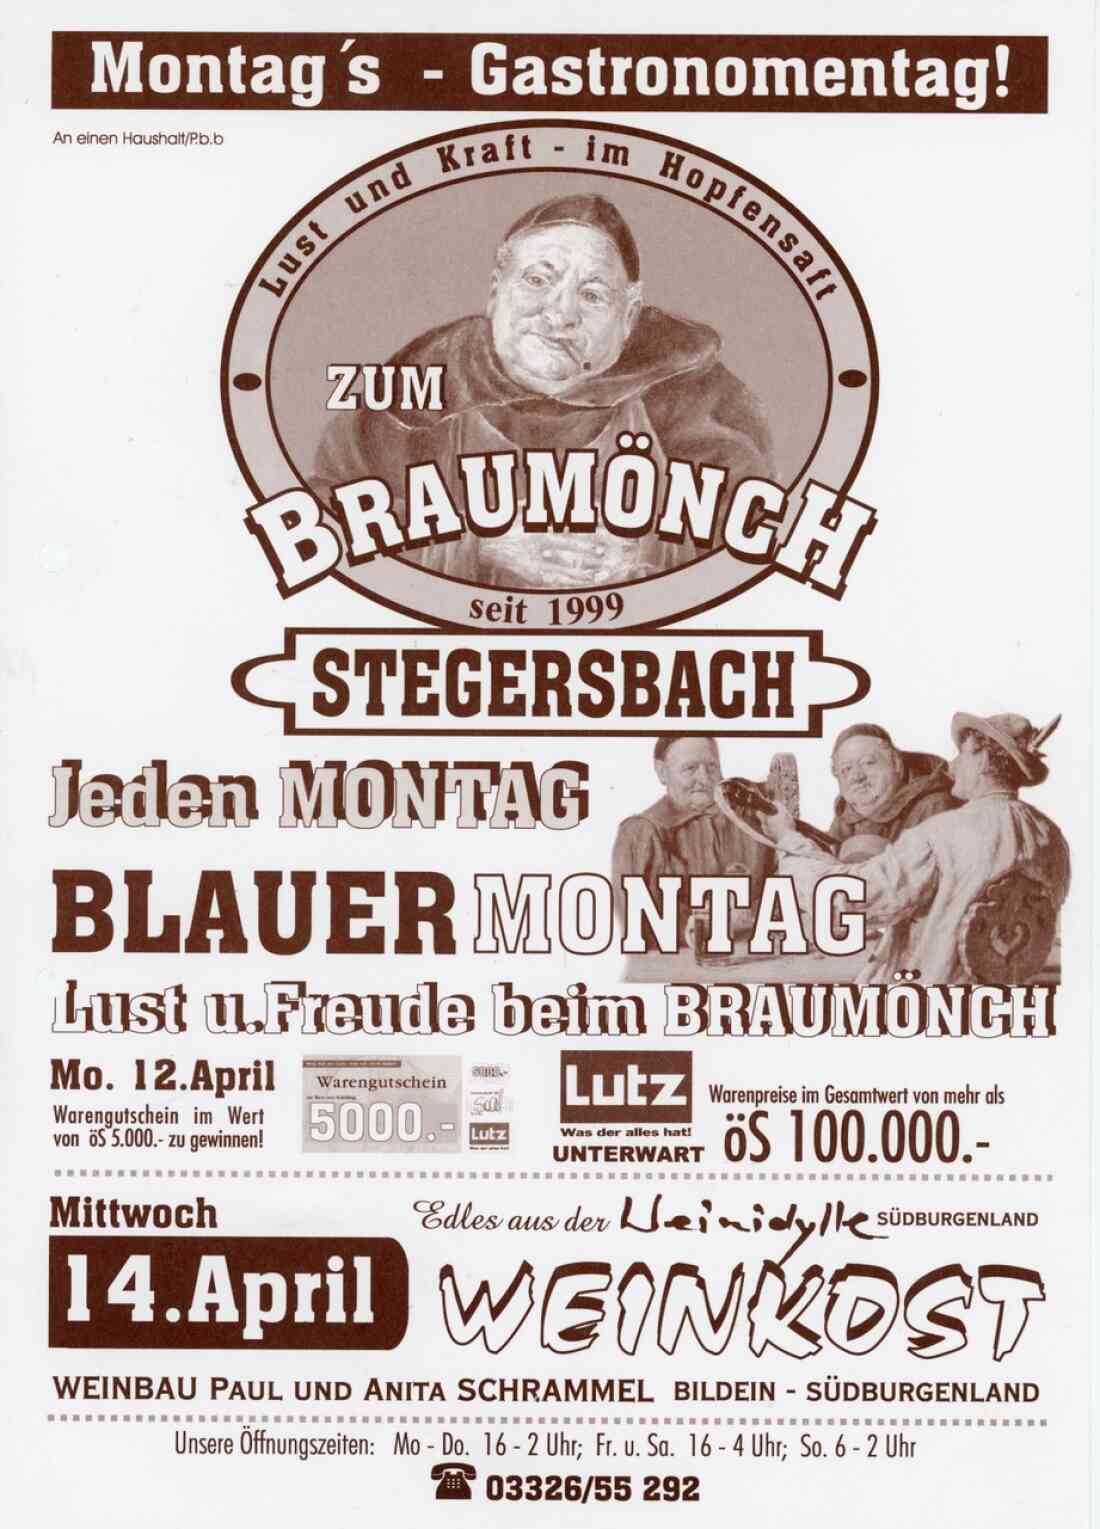 Postwurfsendung und Werbung des Lokal Braumönch in der Grazer Straße 15 im April 1999